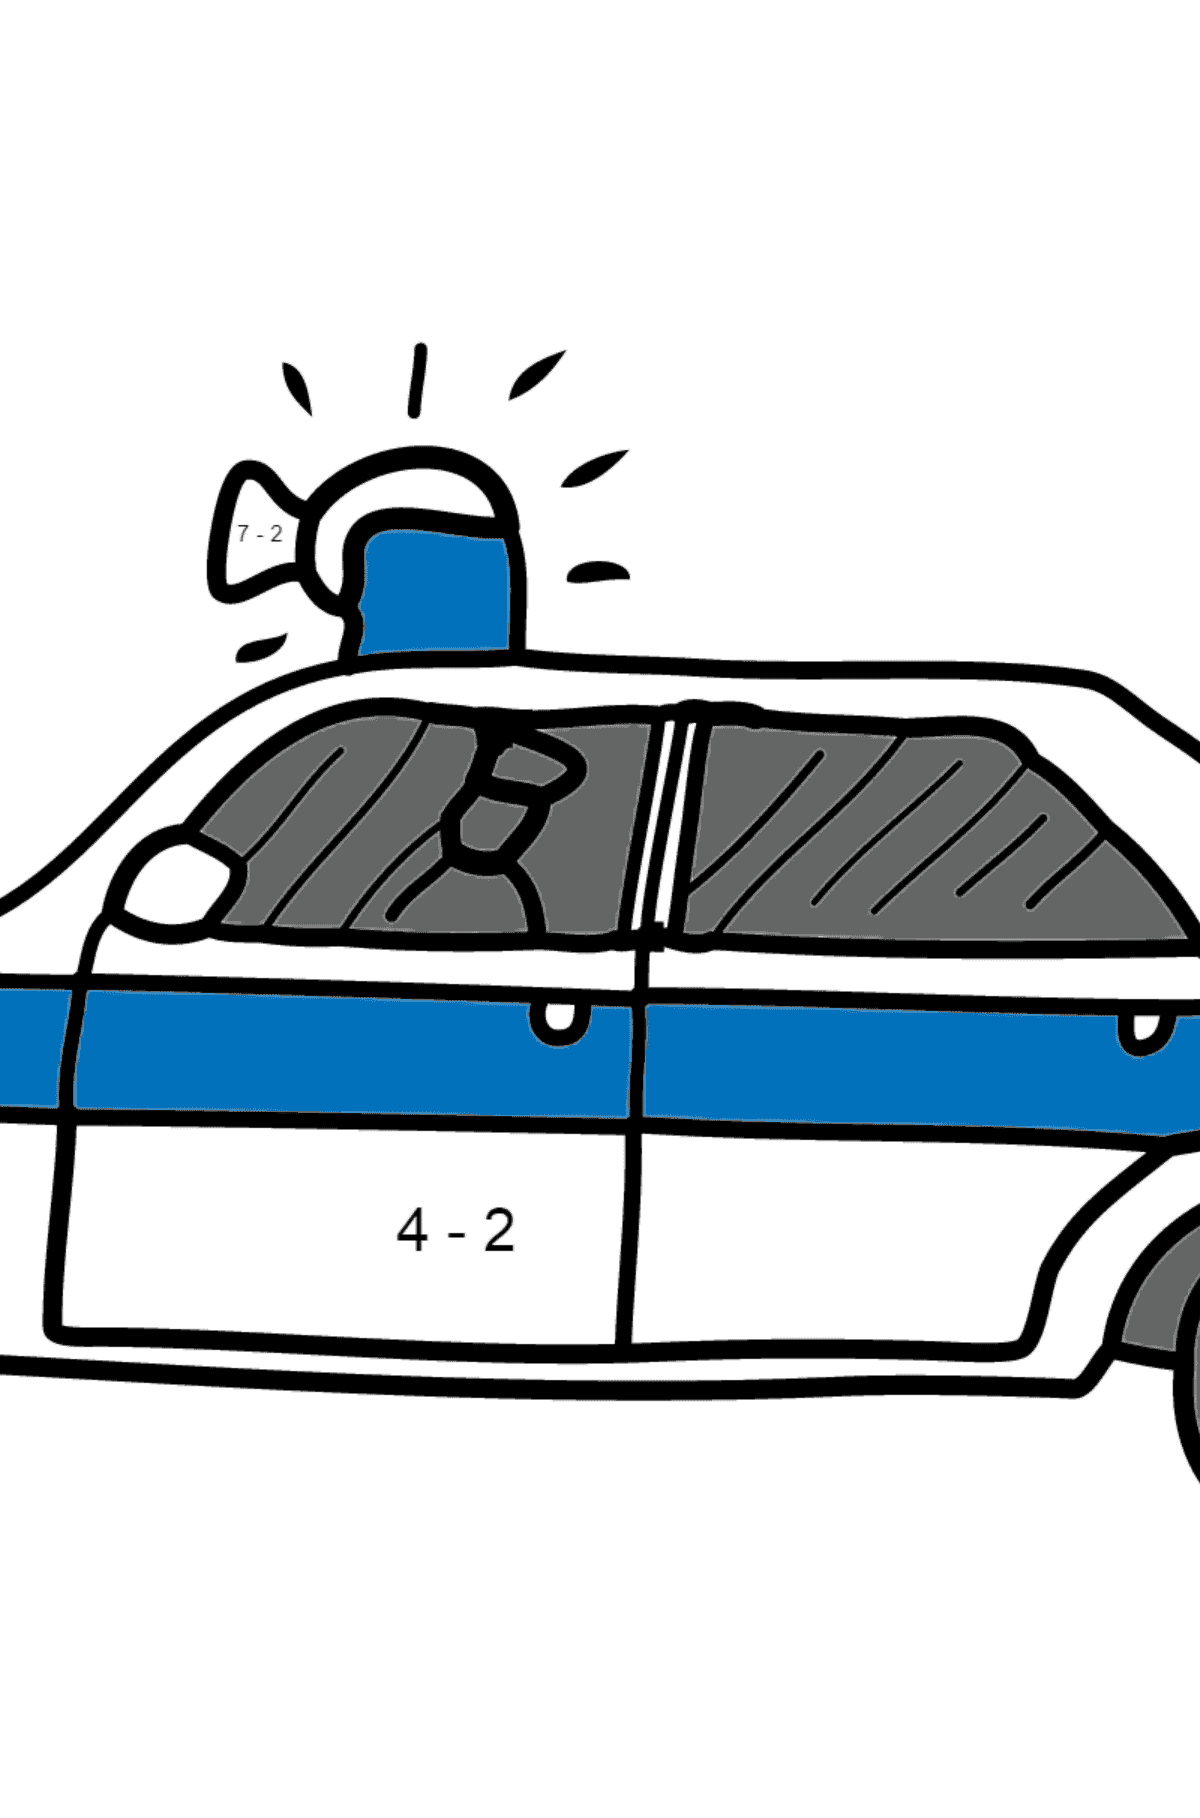 Ausmalbild Polizeiauto - Mathe Ausmalbilder - Subtraktion für Kinder